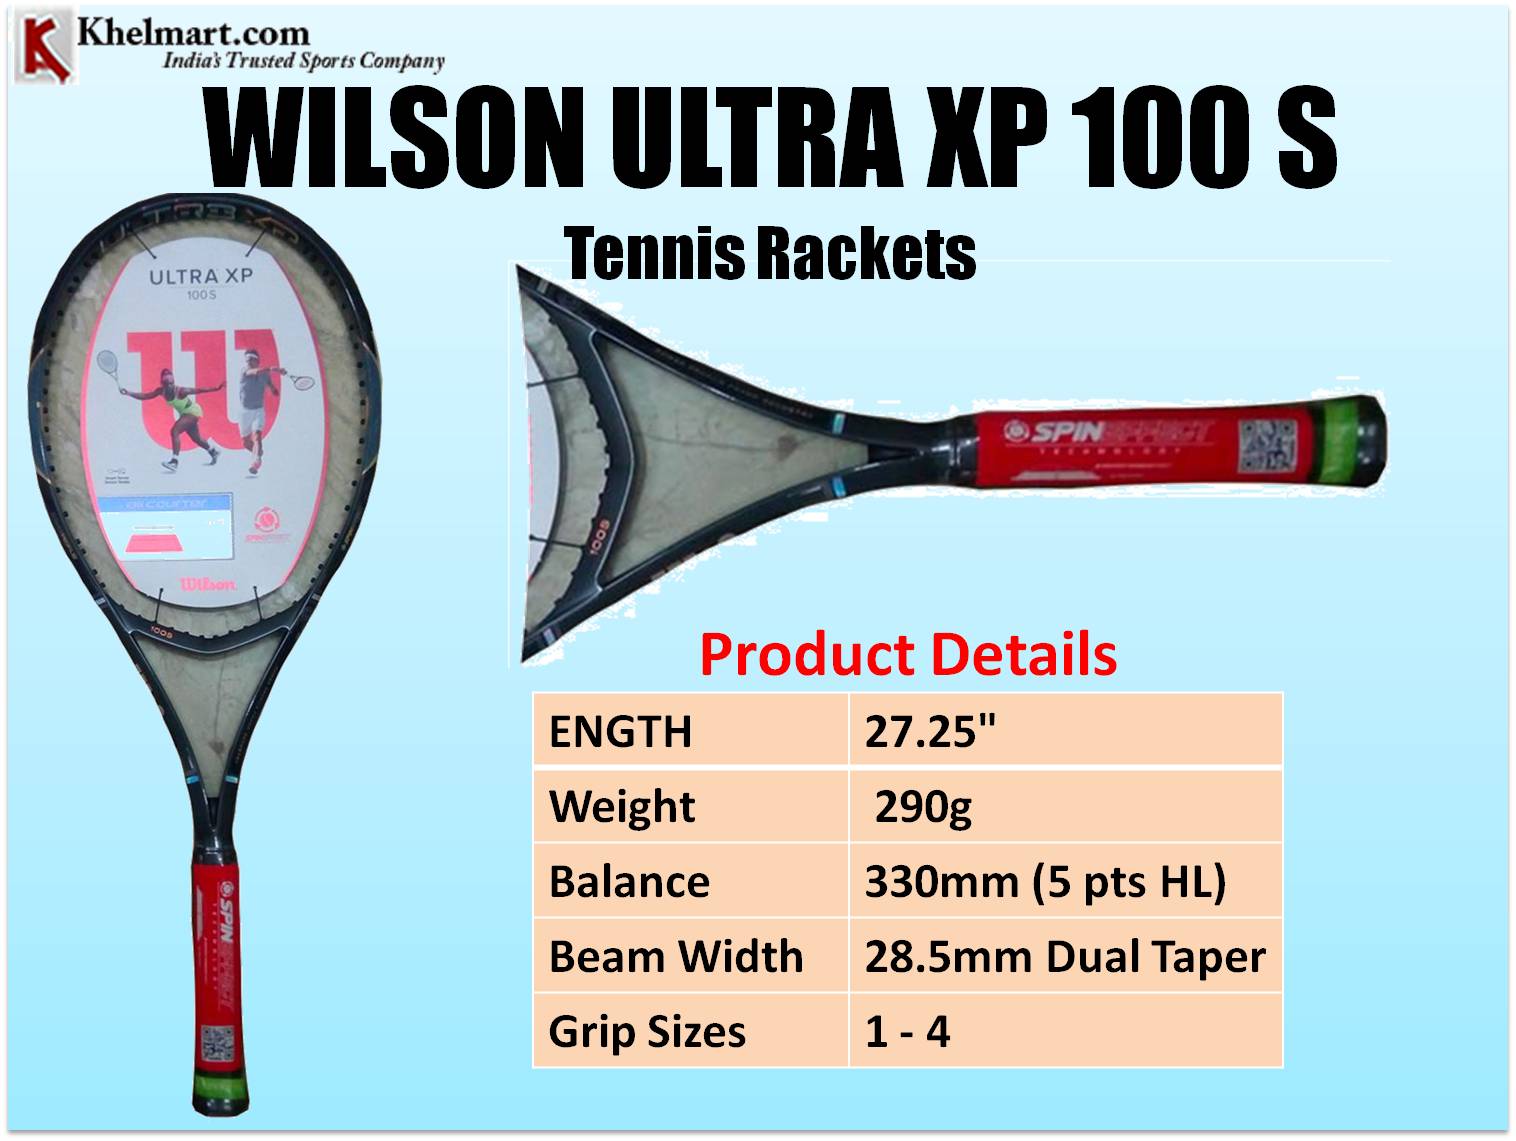  WILSON_ULTRA_XP_100S_Tennis_Rackets.jpg 